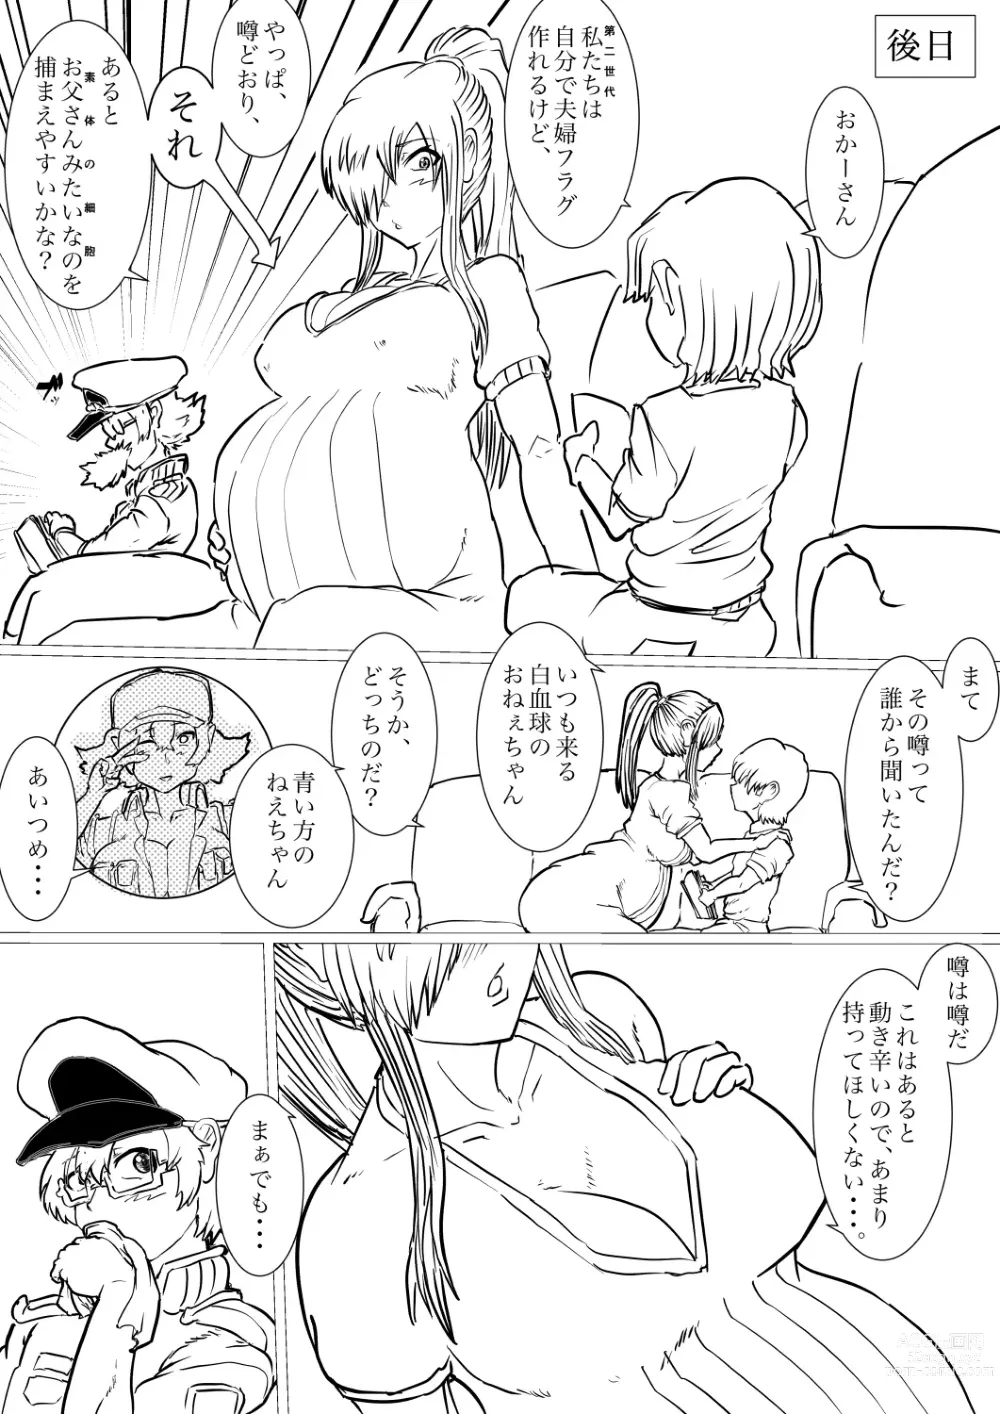 Page 24 of doujinshi Dai 1-ki chiryo-yo no kiki kosei